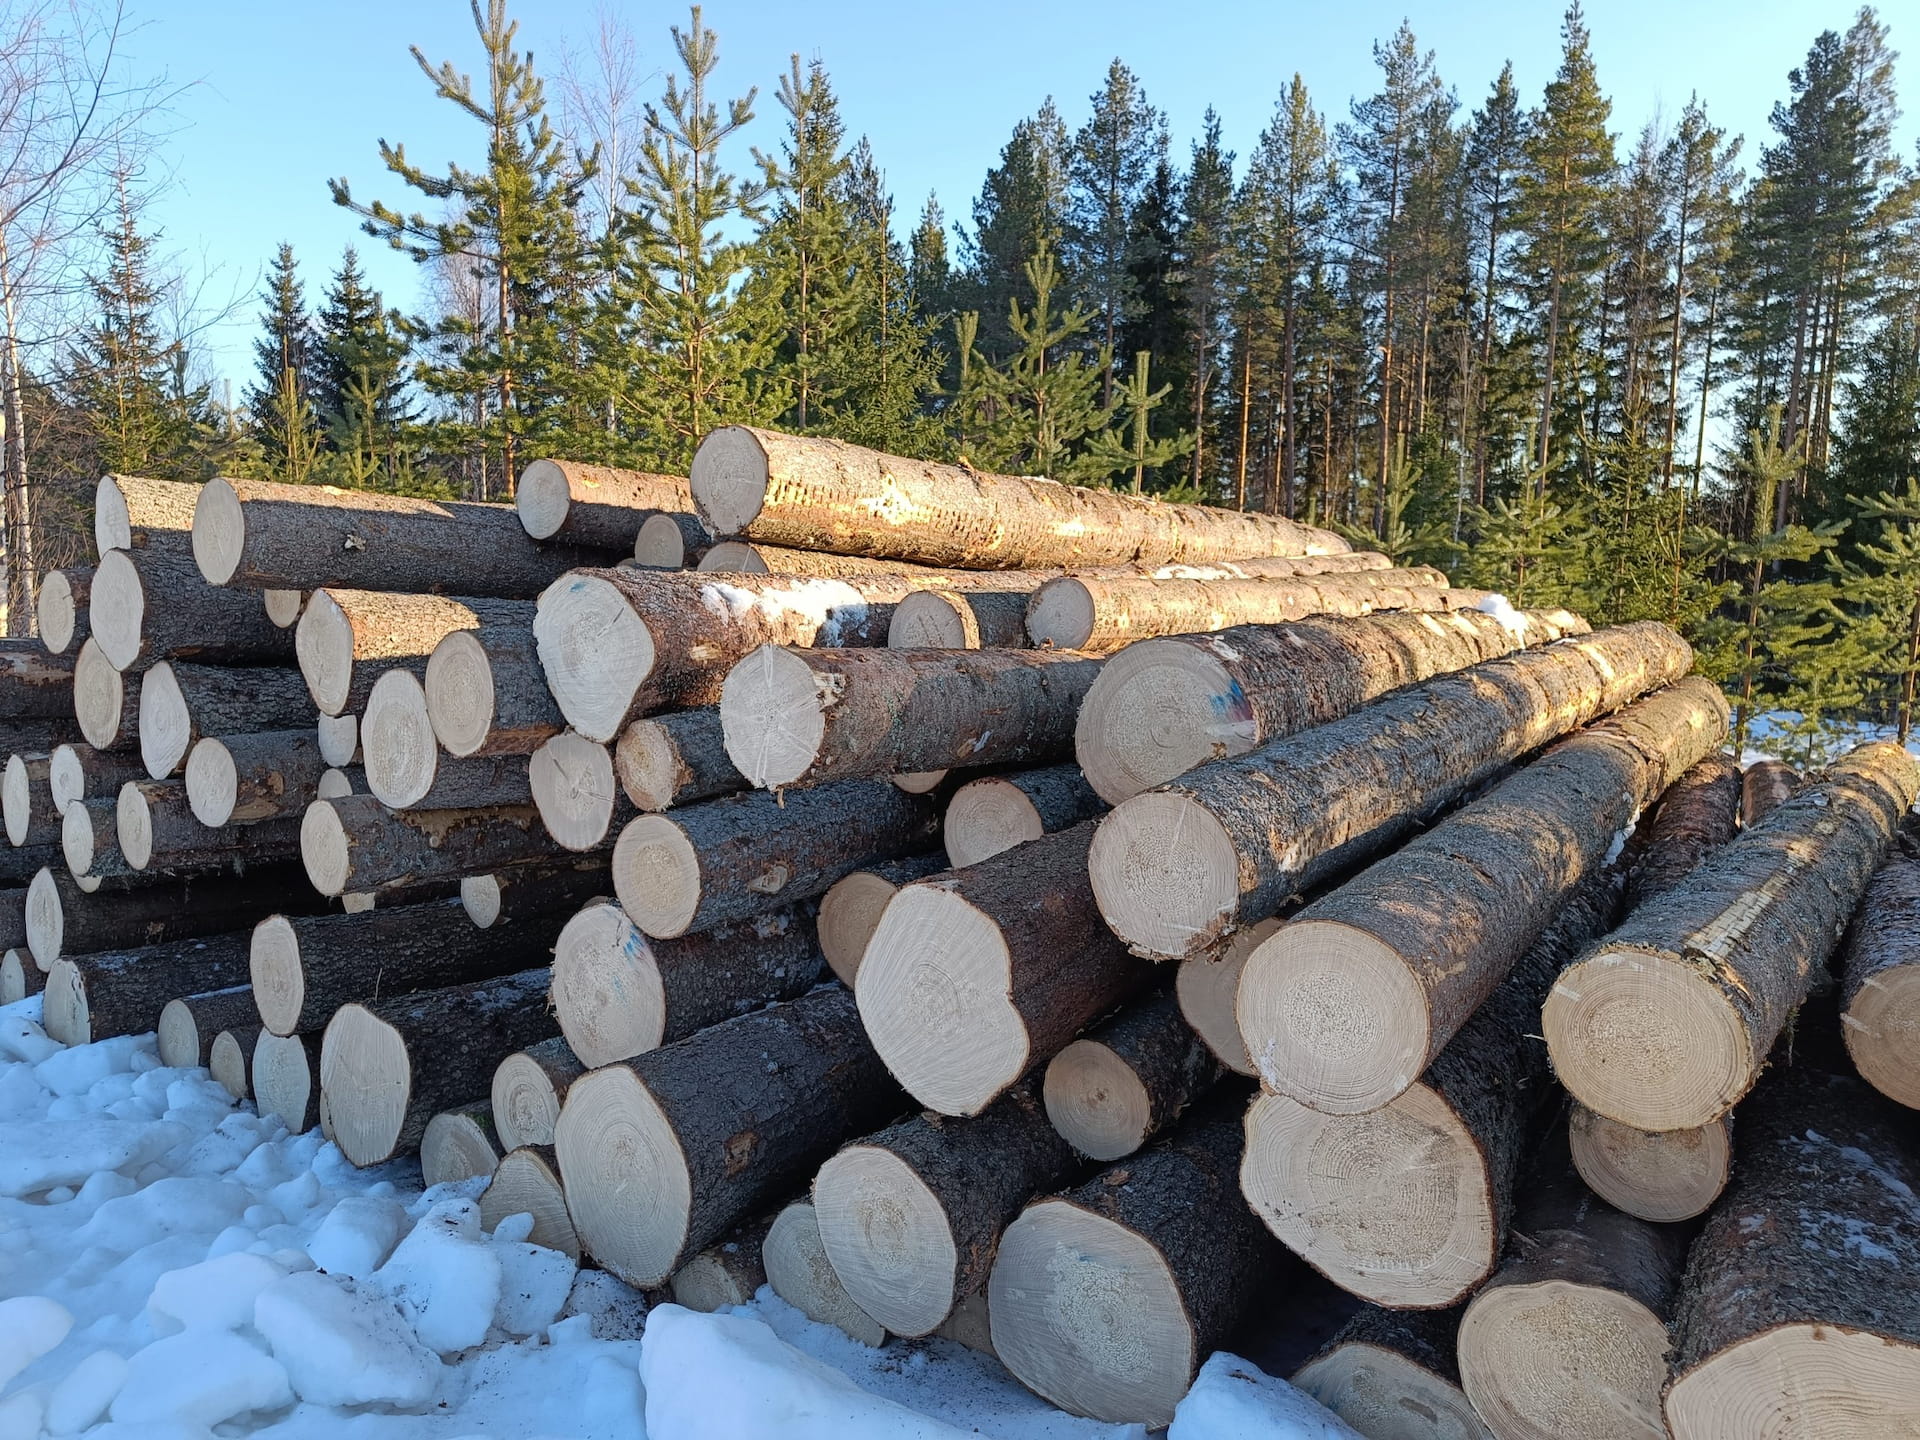 Kevät on puukaupan ja metsänhoidon valmistelun aikaa- puukauppa jatkunut normaalisti lakoista huolimatta